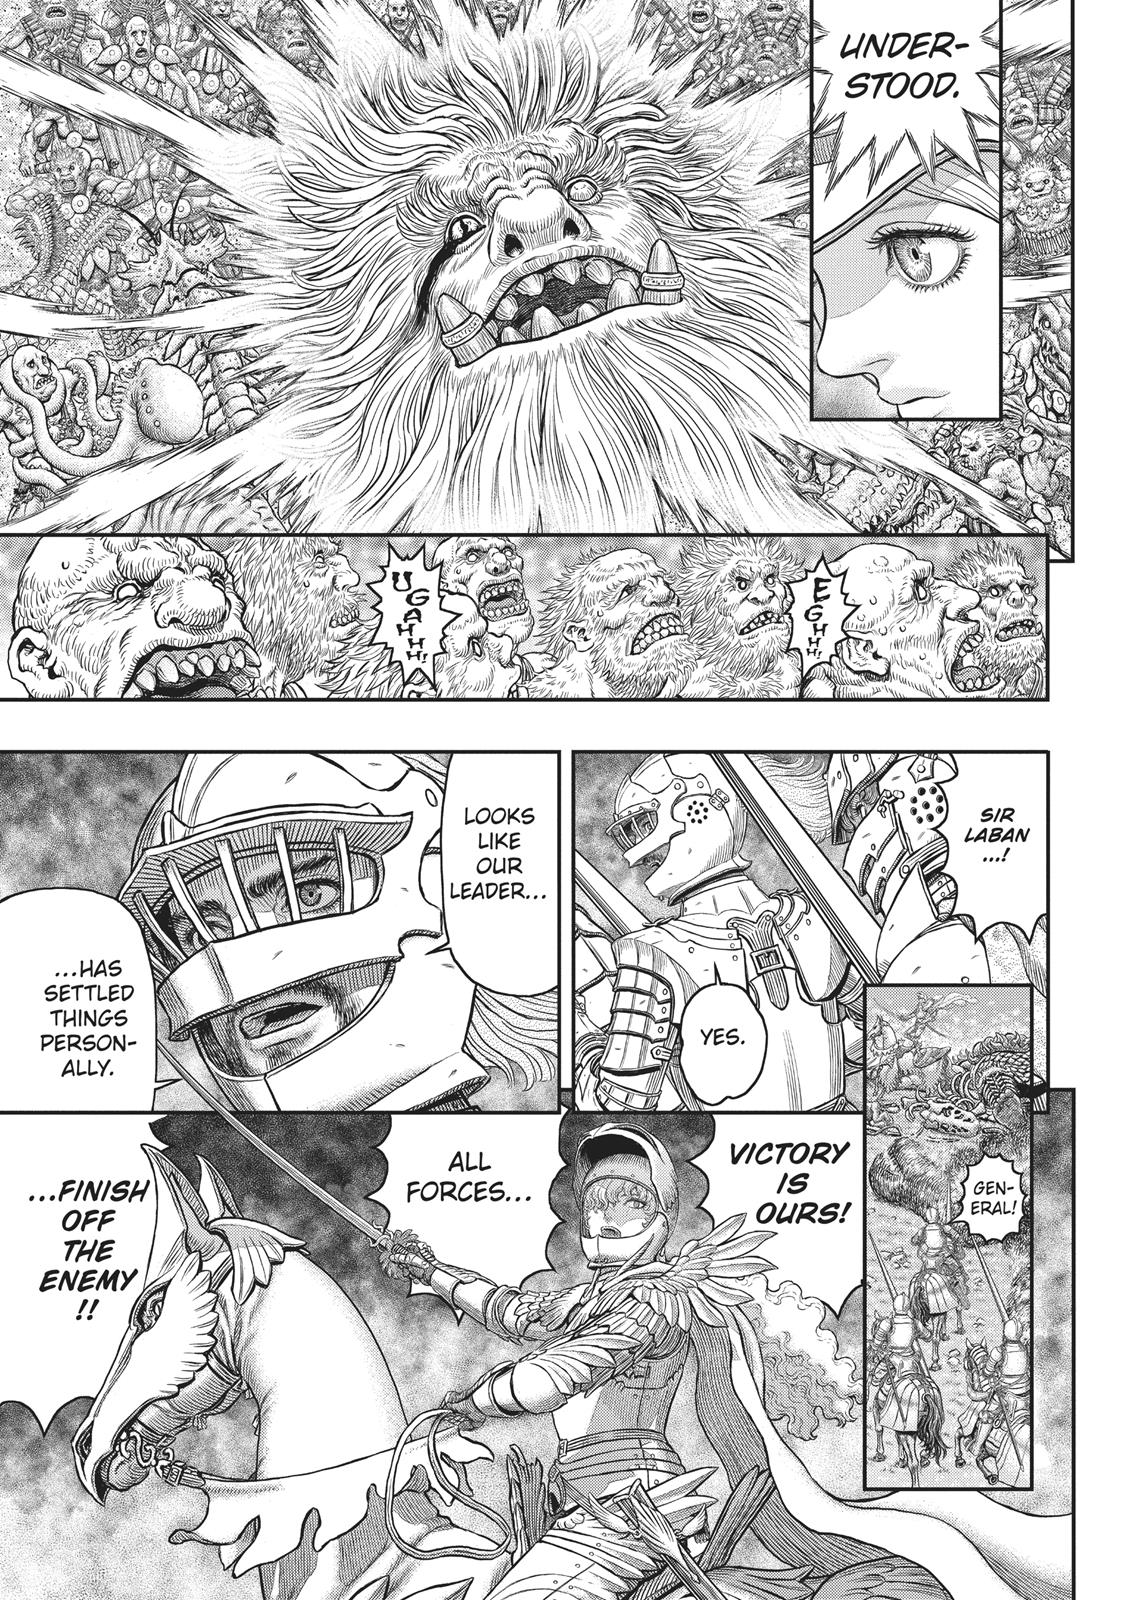 Berserk Manga Chapter 357 image 04